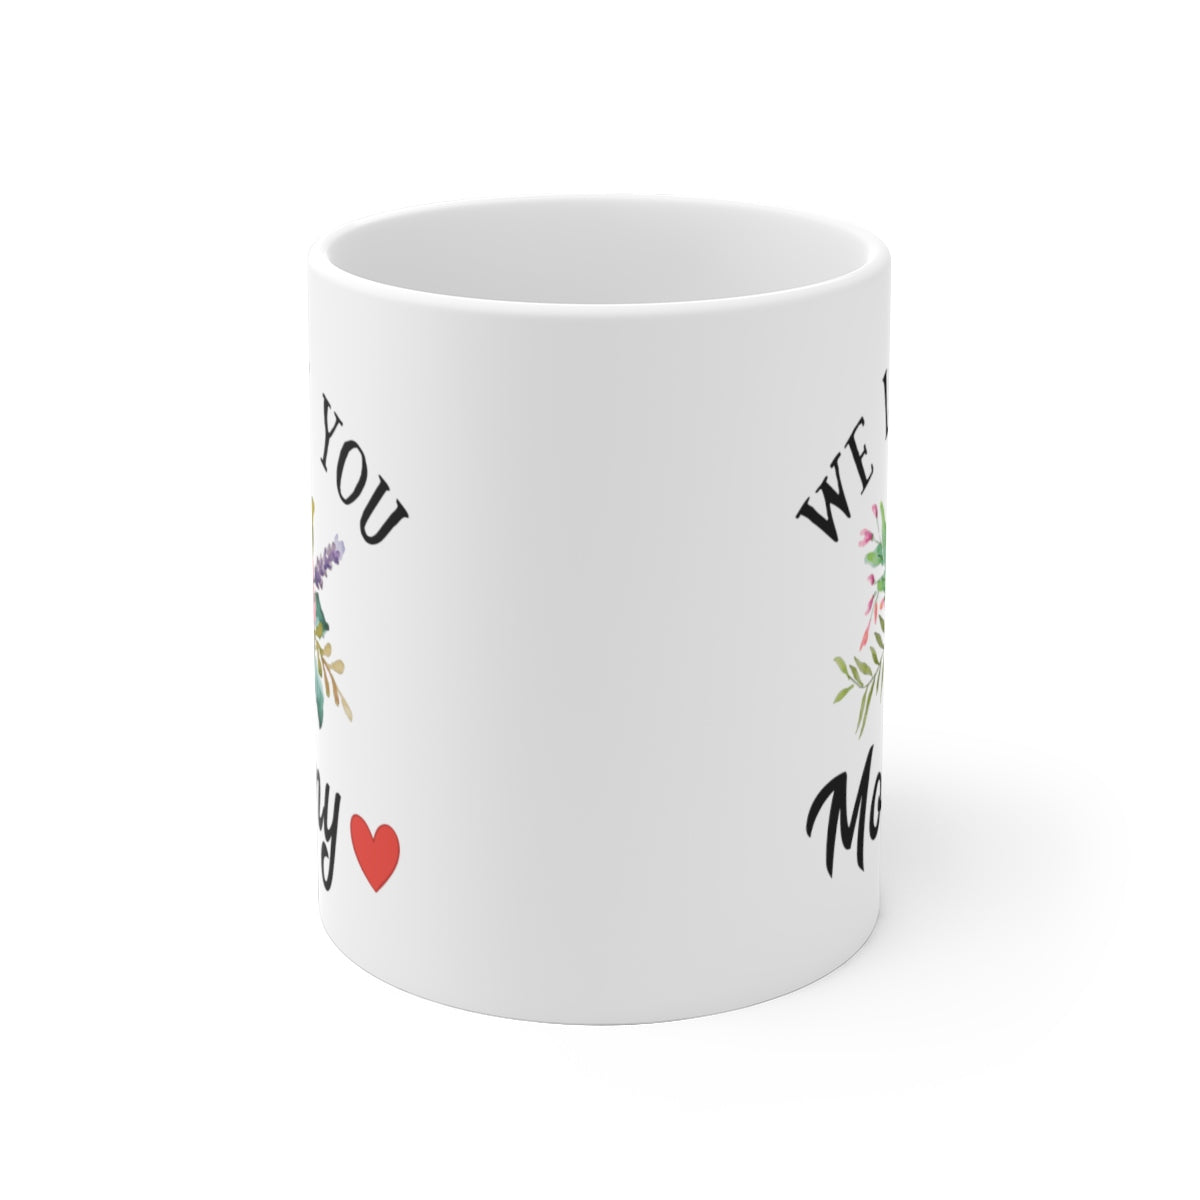 We love you Mommy - Shop for Mom Mug - White Ceramic 11oz Coffee Mug